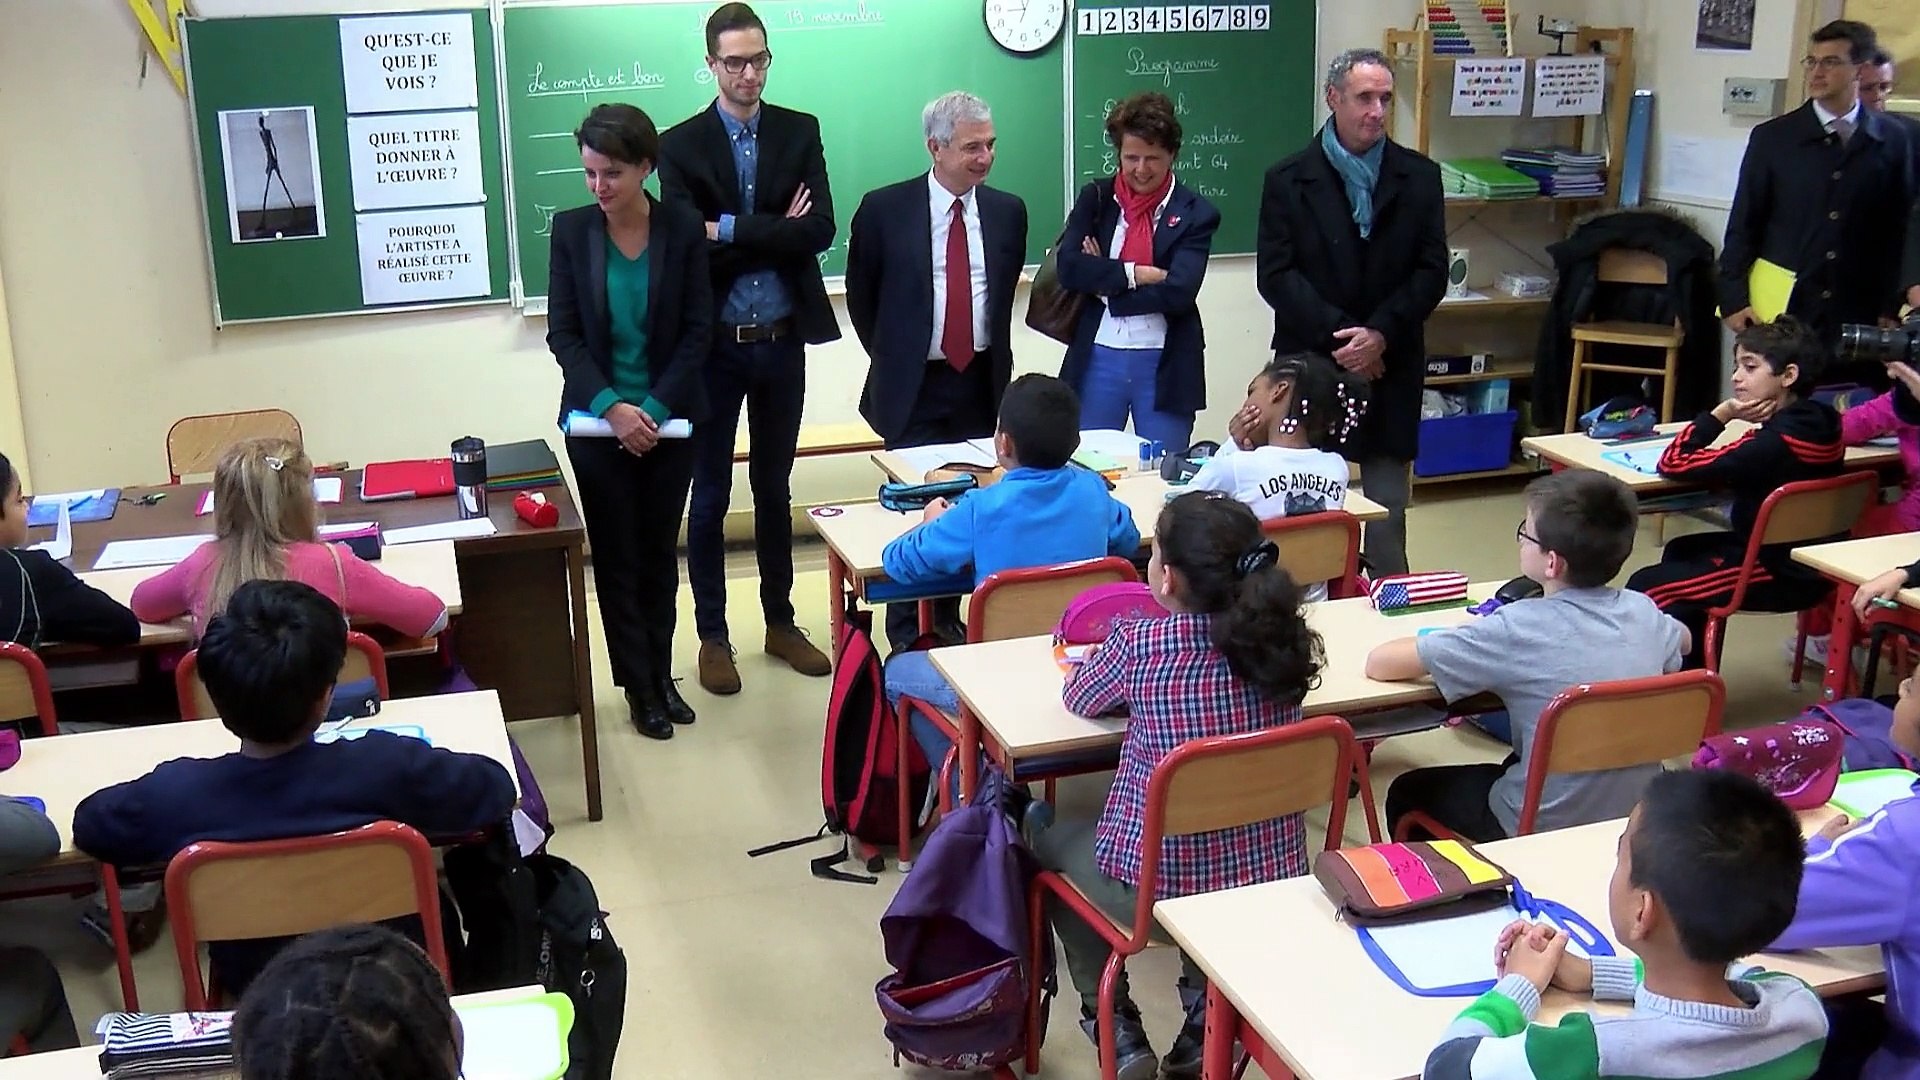 ARCHIVE] 9 mesures pour les écoles de Seine-Saint-Denis - Vidéo Dailymotion